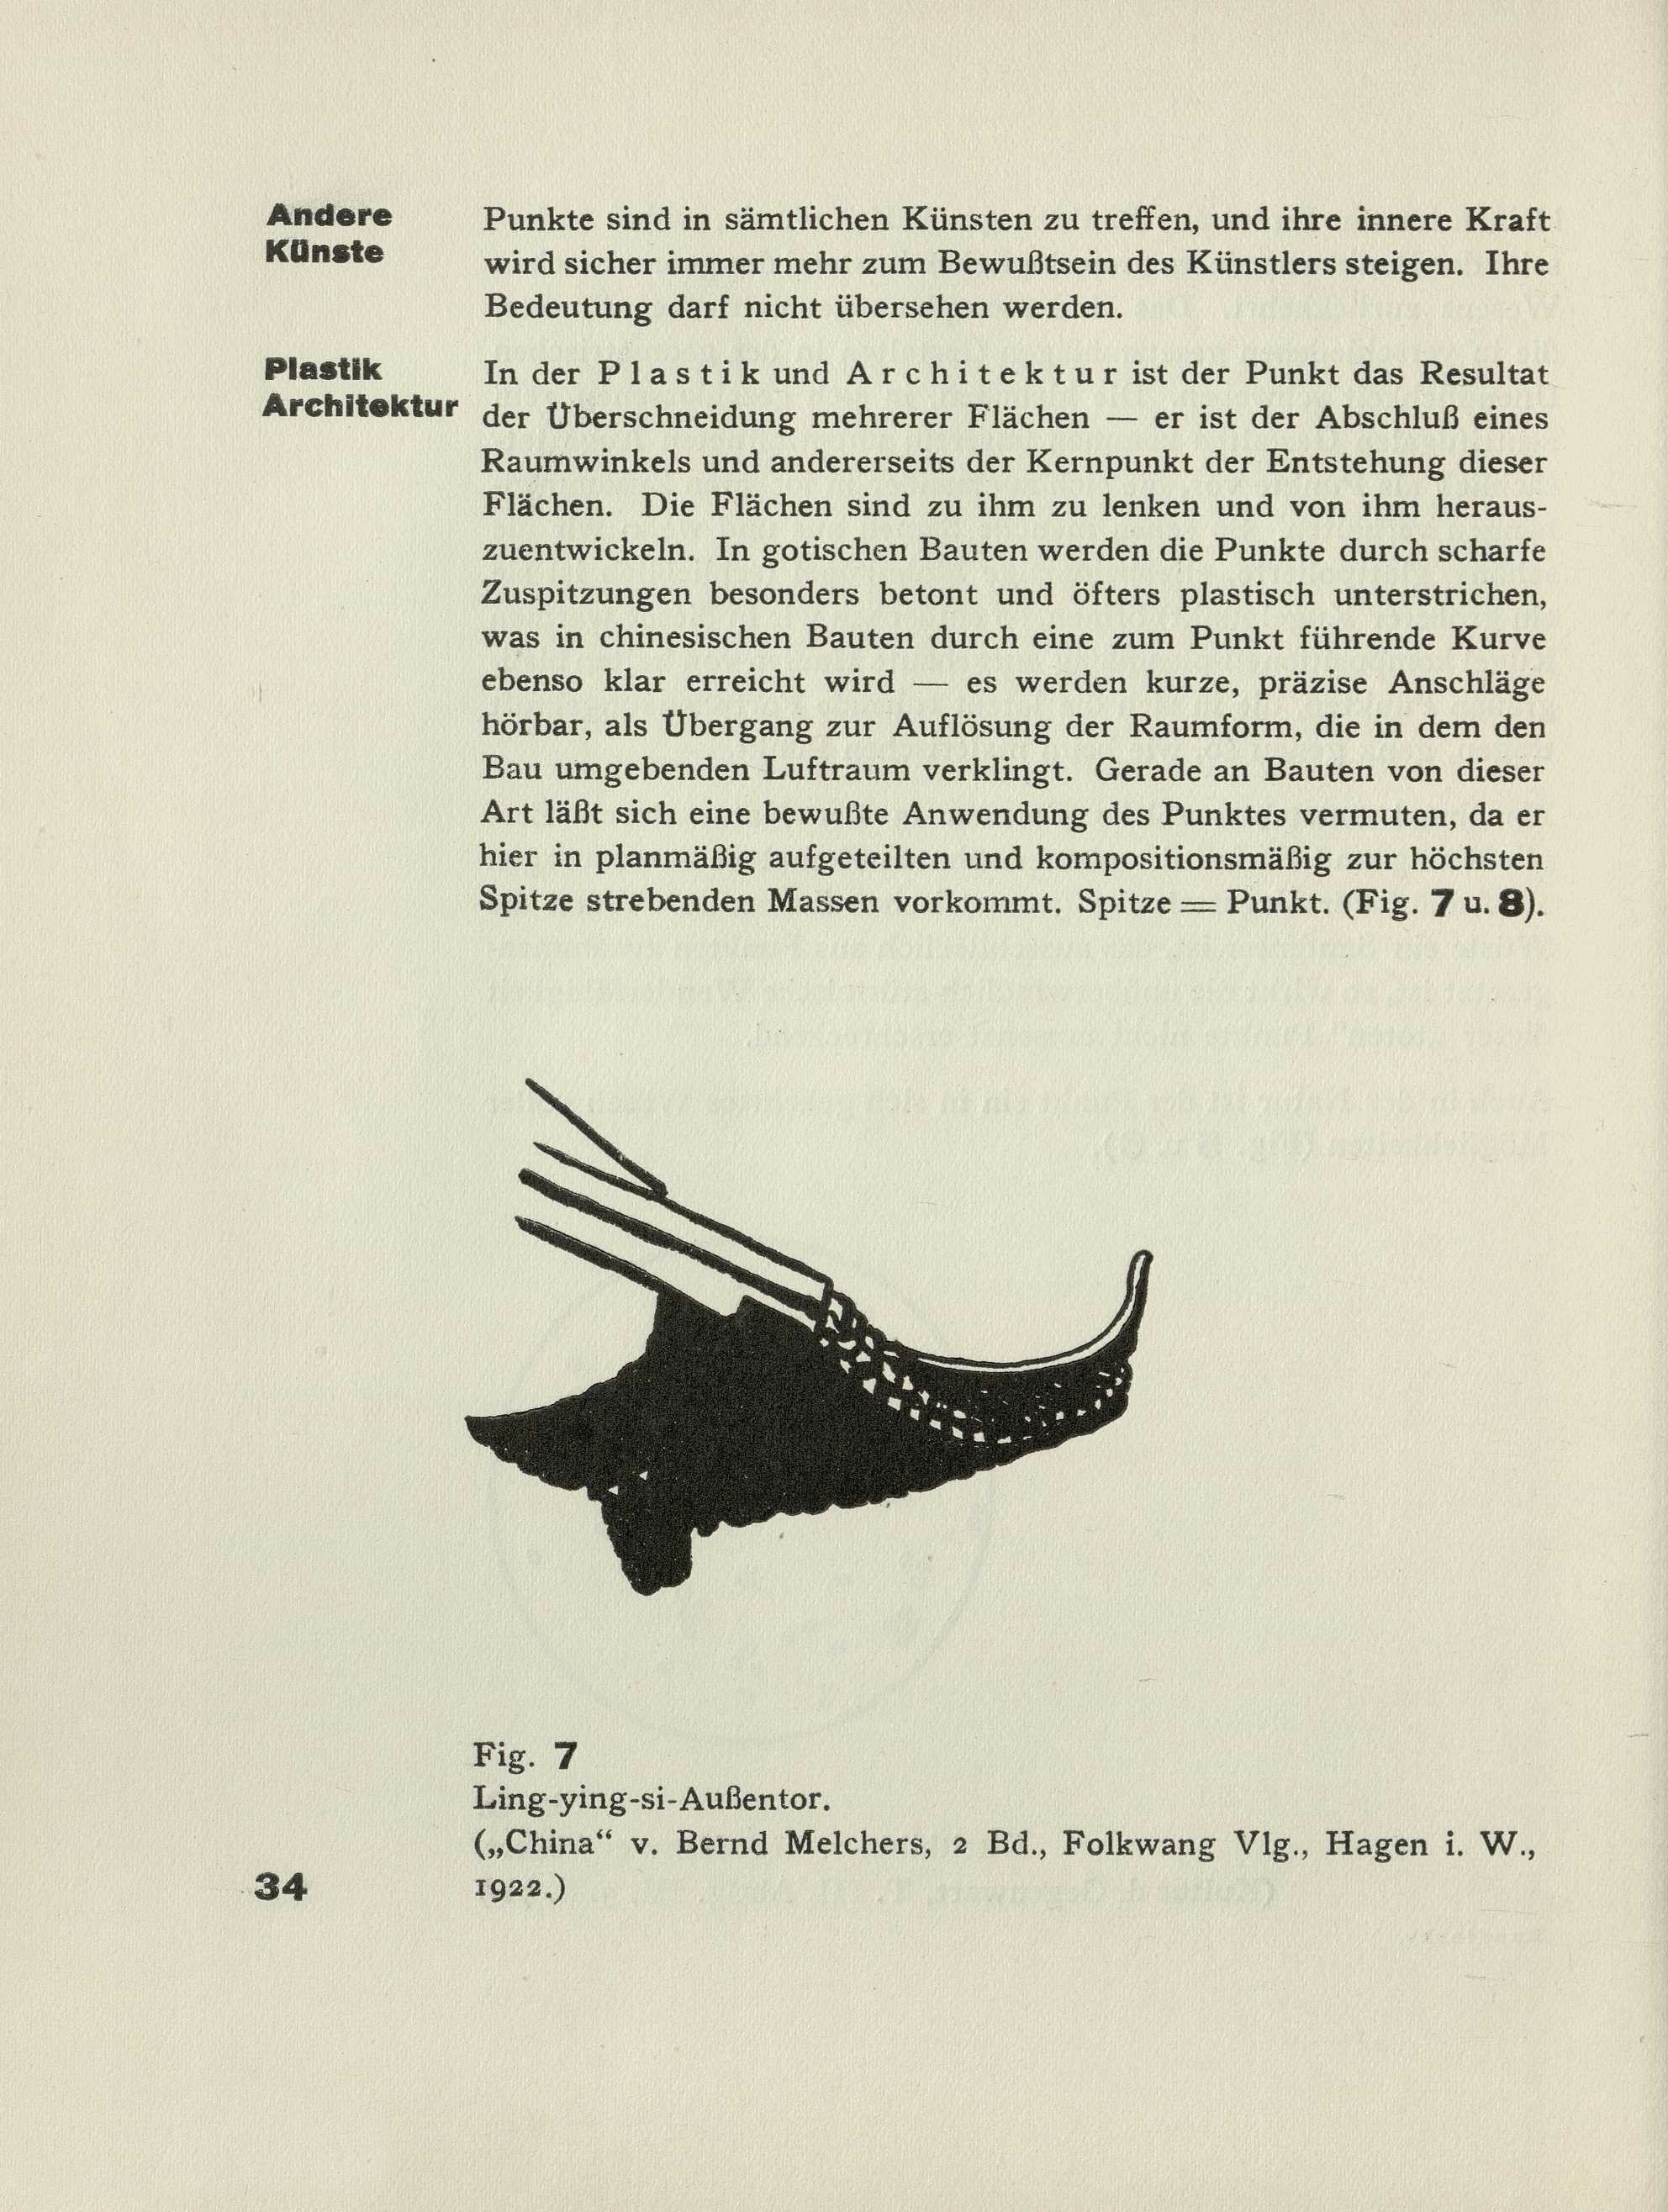 Punkt und Linie zu Fläche : Beitrag zur Analyse der malerischen Elemente / Kandinsky. — 2. auflage, unverändert. — München : Albert Langen Verlag, 1928